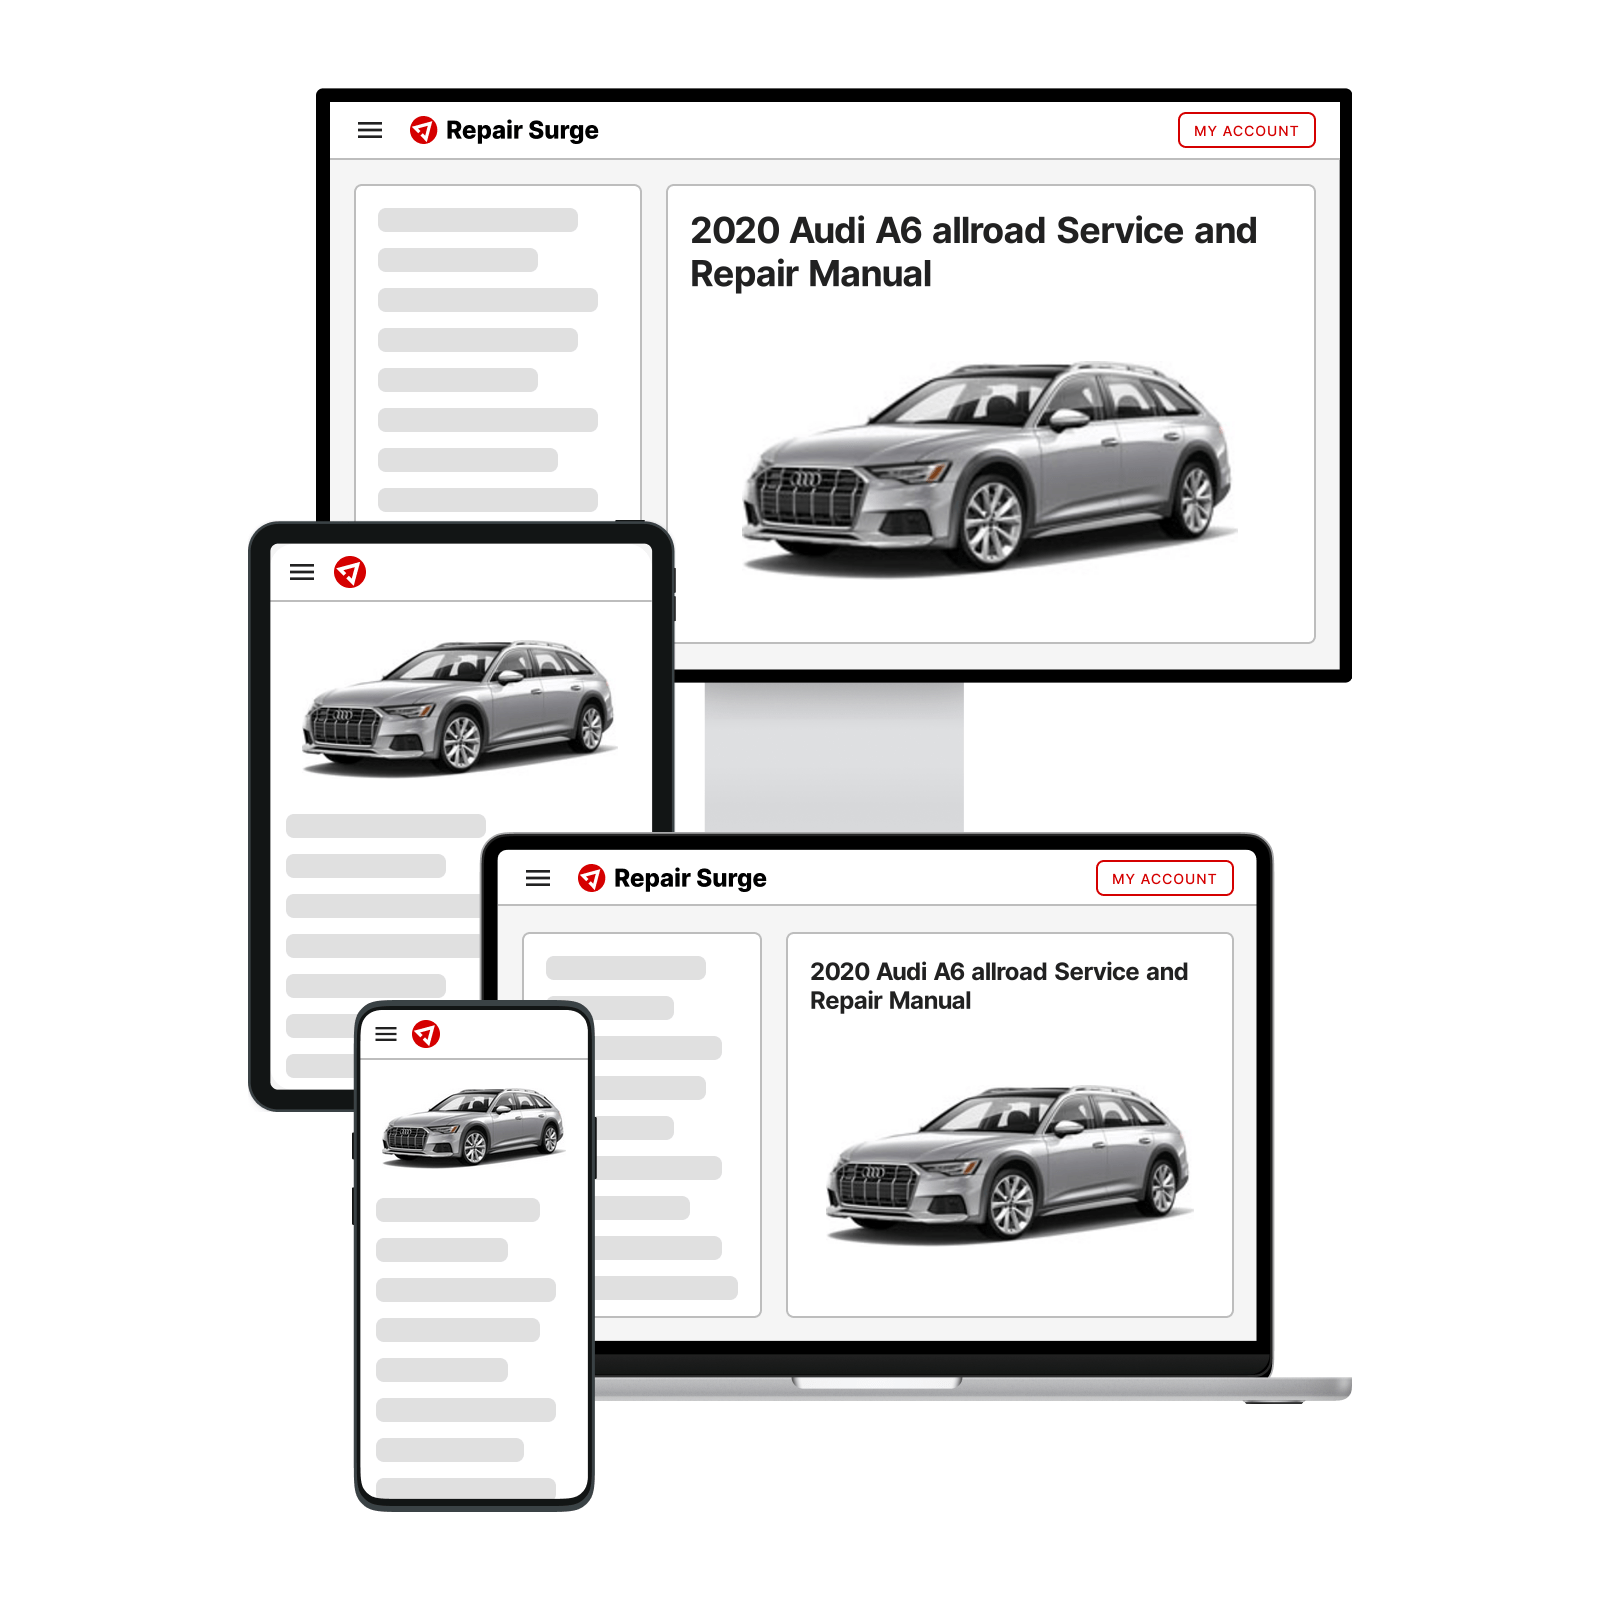 2020 Audi A6 allroad service and repair manual hero image